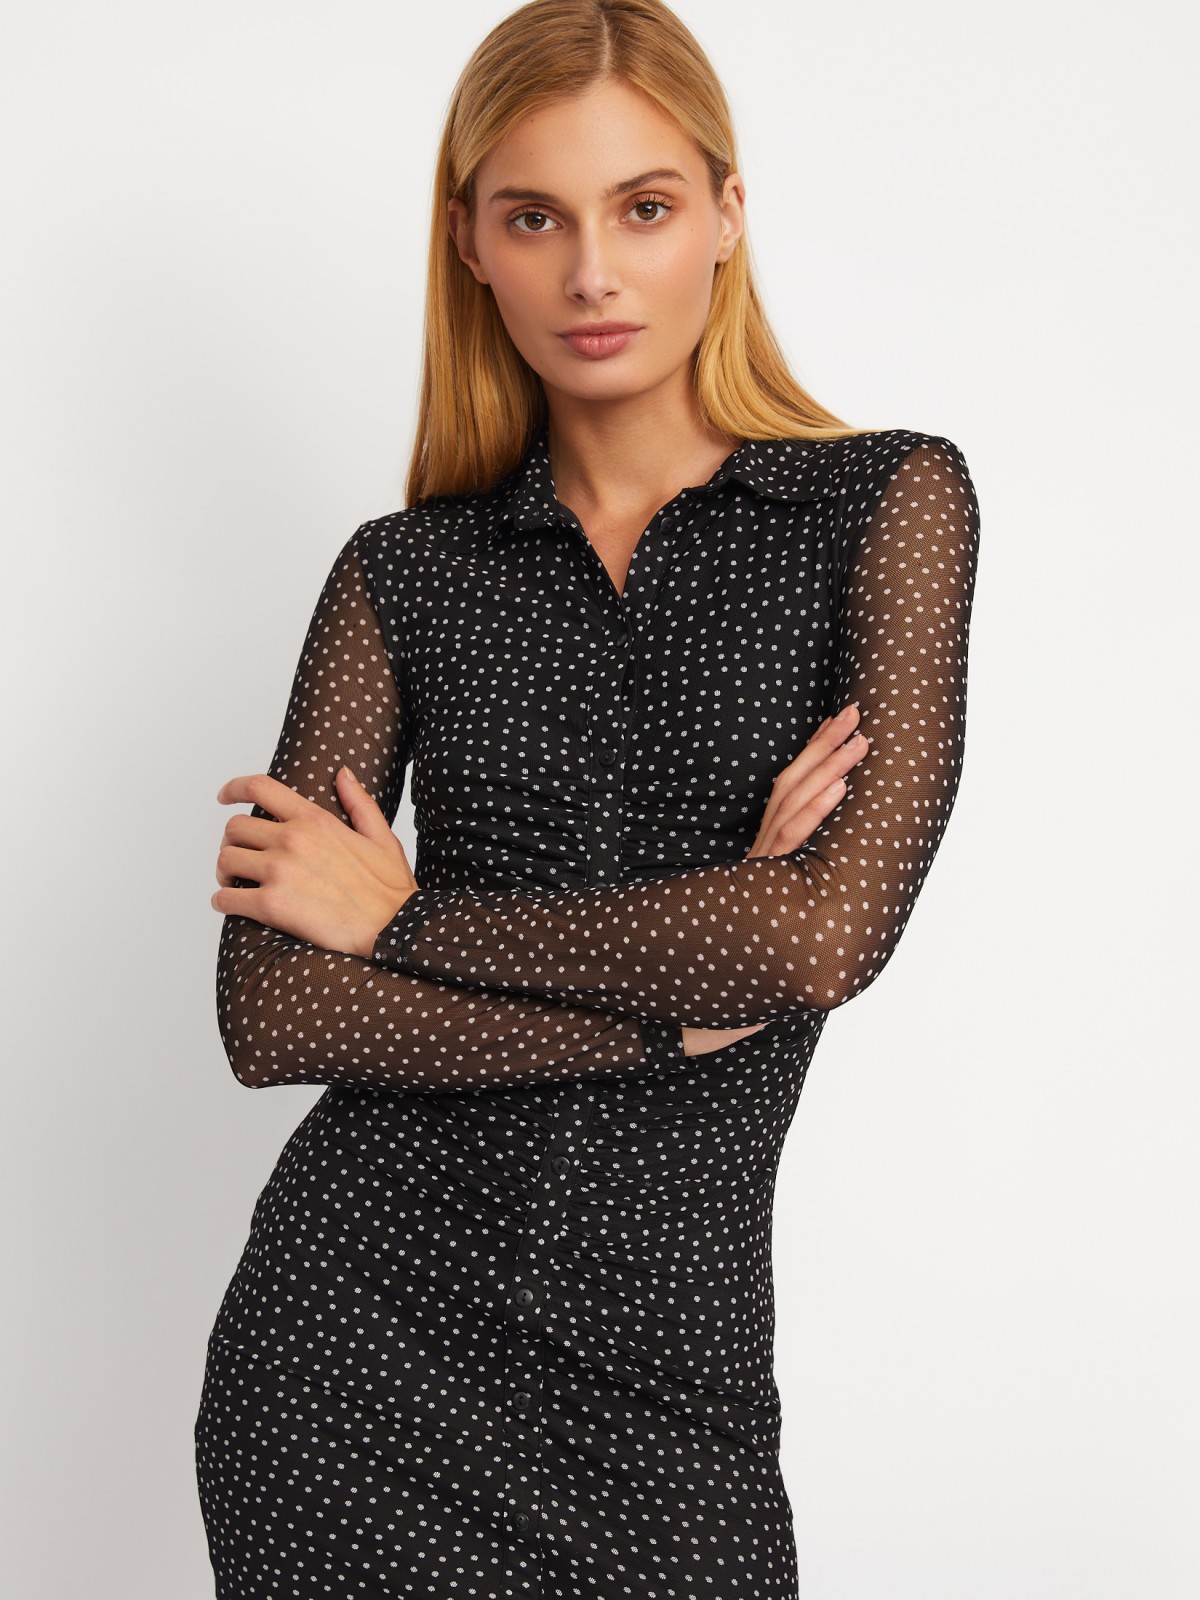 Платье-рубашка длины мини из сетки в горошек с драпировкой zolla 024118159041, цвет черный, размер XS - фото 3